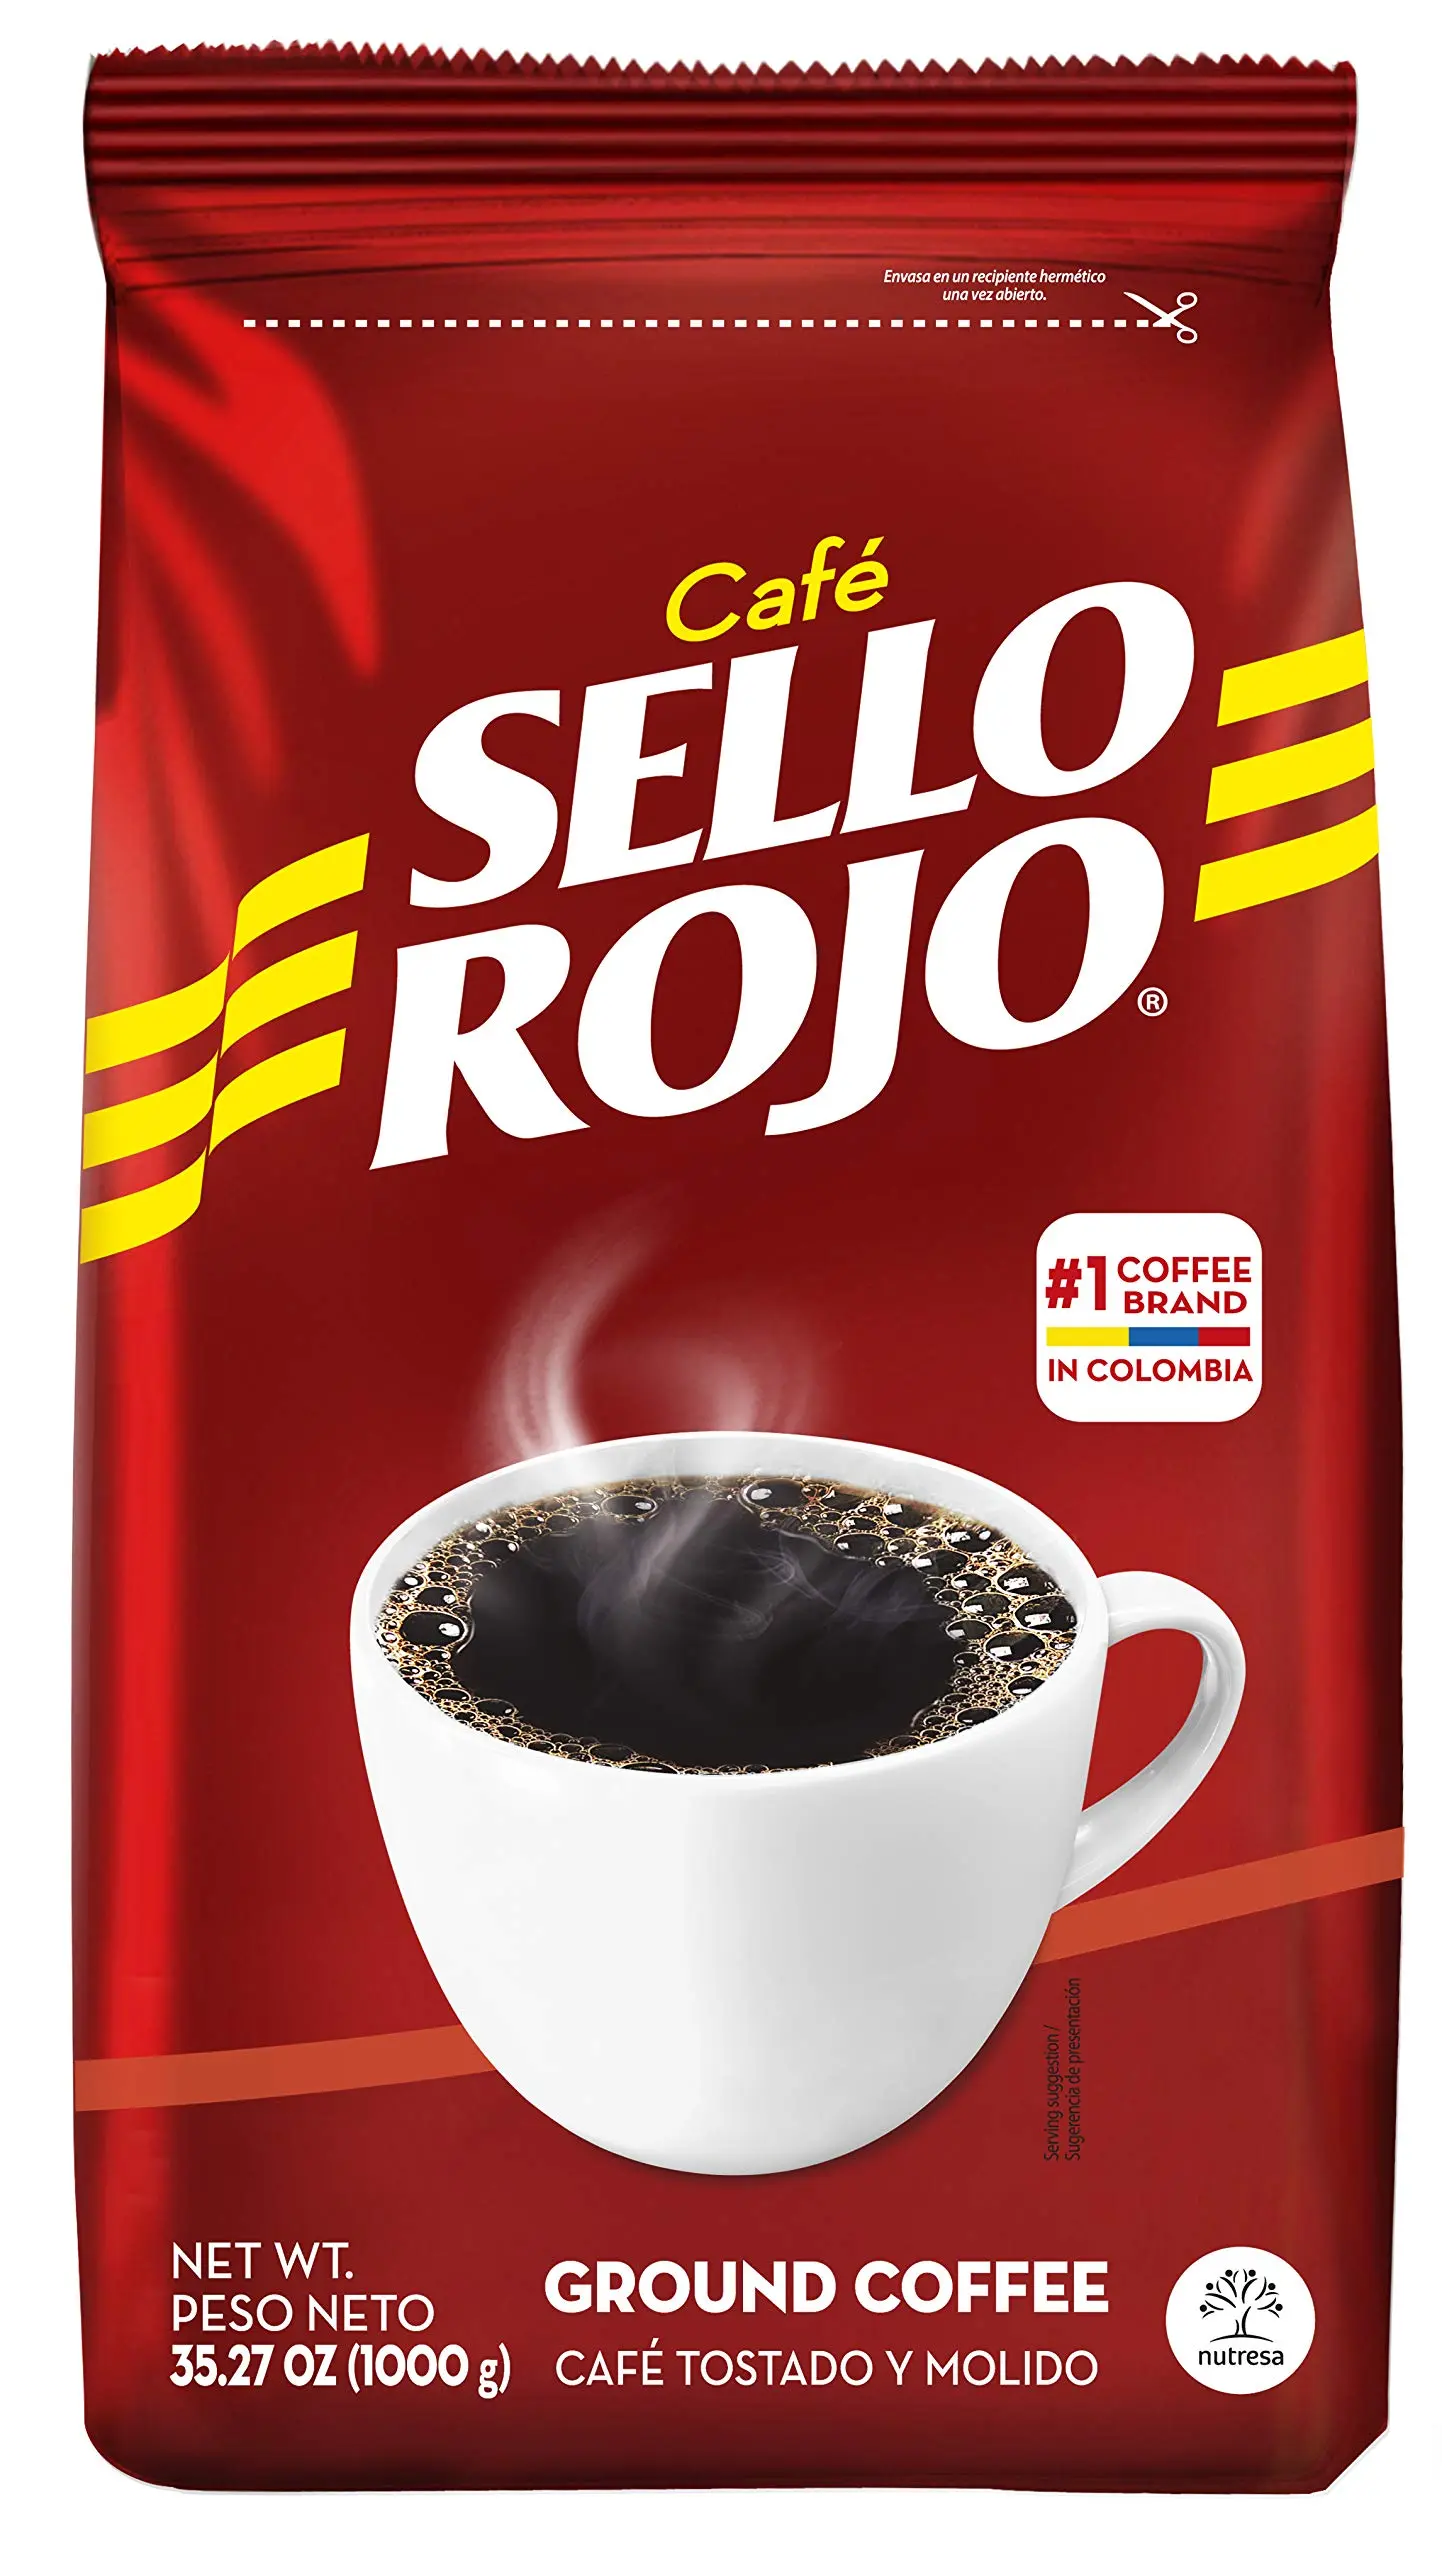 cafe sello rojo - Quién distribuye Café Sello Rojo